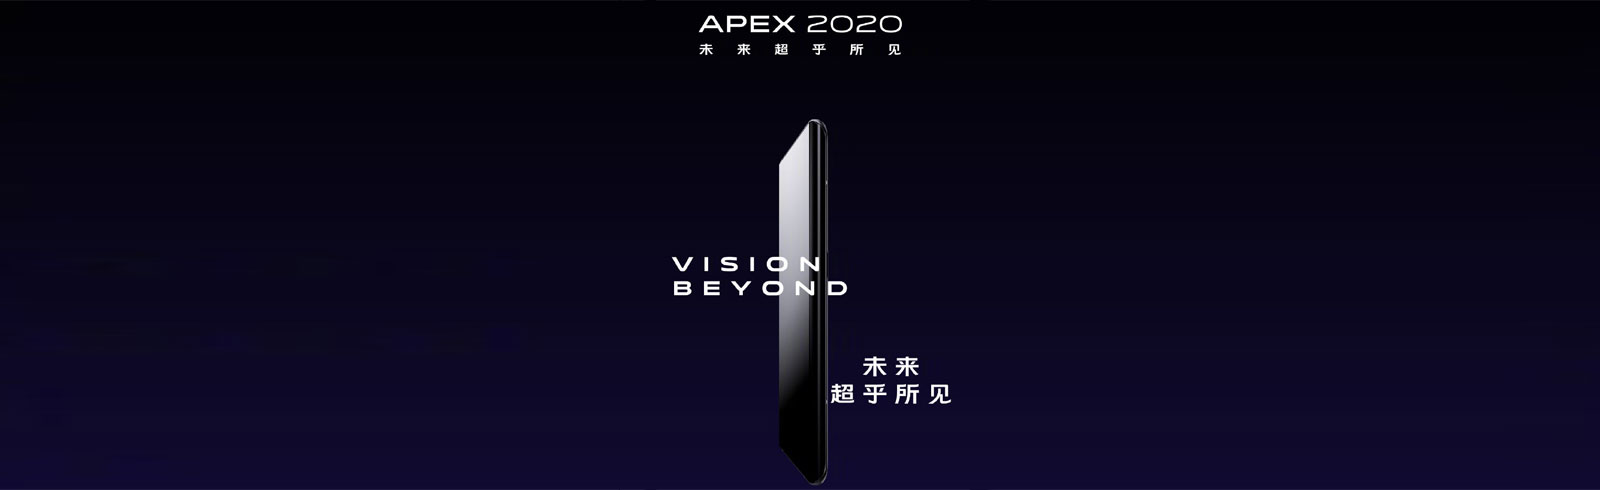 Vivo  Thông số kỹ thuật và tính năng của Apex 2020